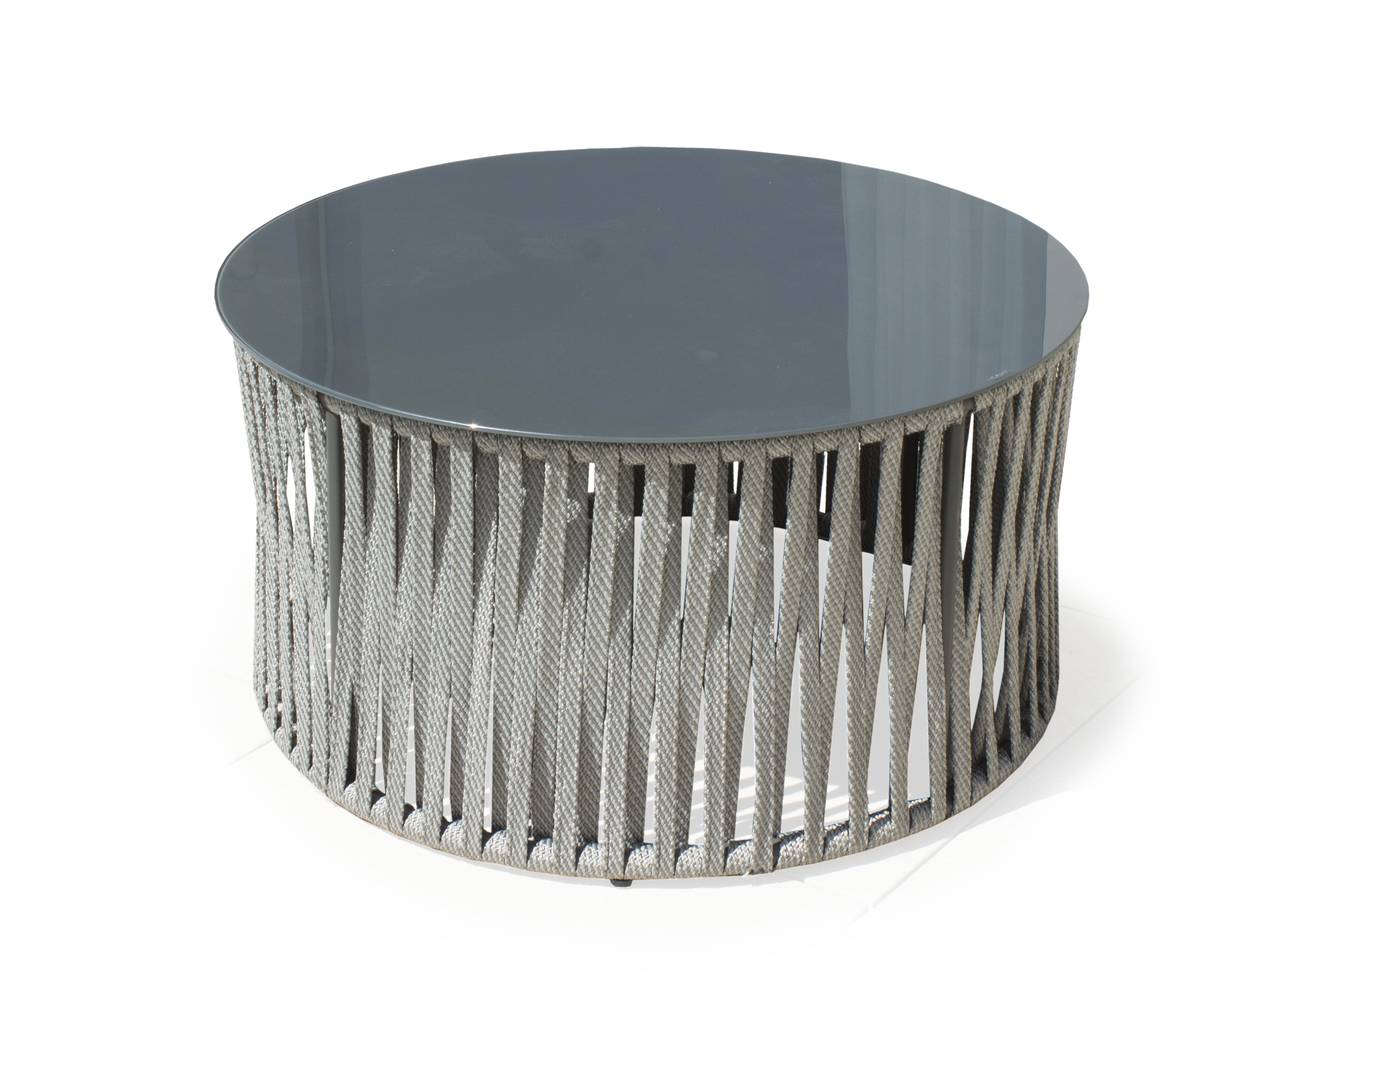 Rinconera Cuerda Naroha-8 - Rinconera circular lujo de 8-12 plazas  +  mesa centro. Hecha de aluminio y cuerda color gris.